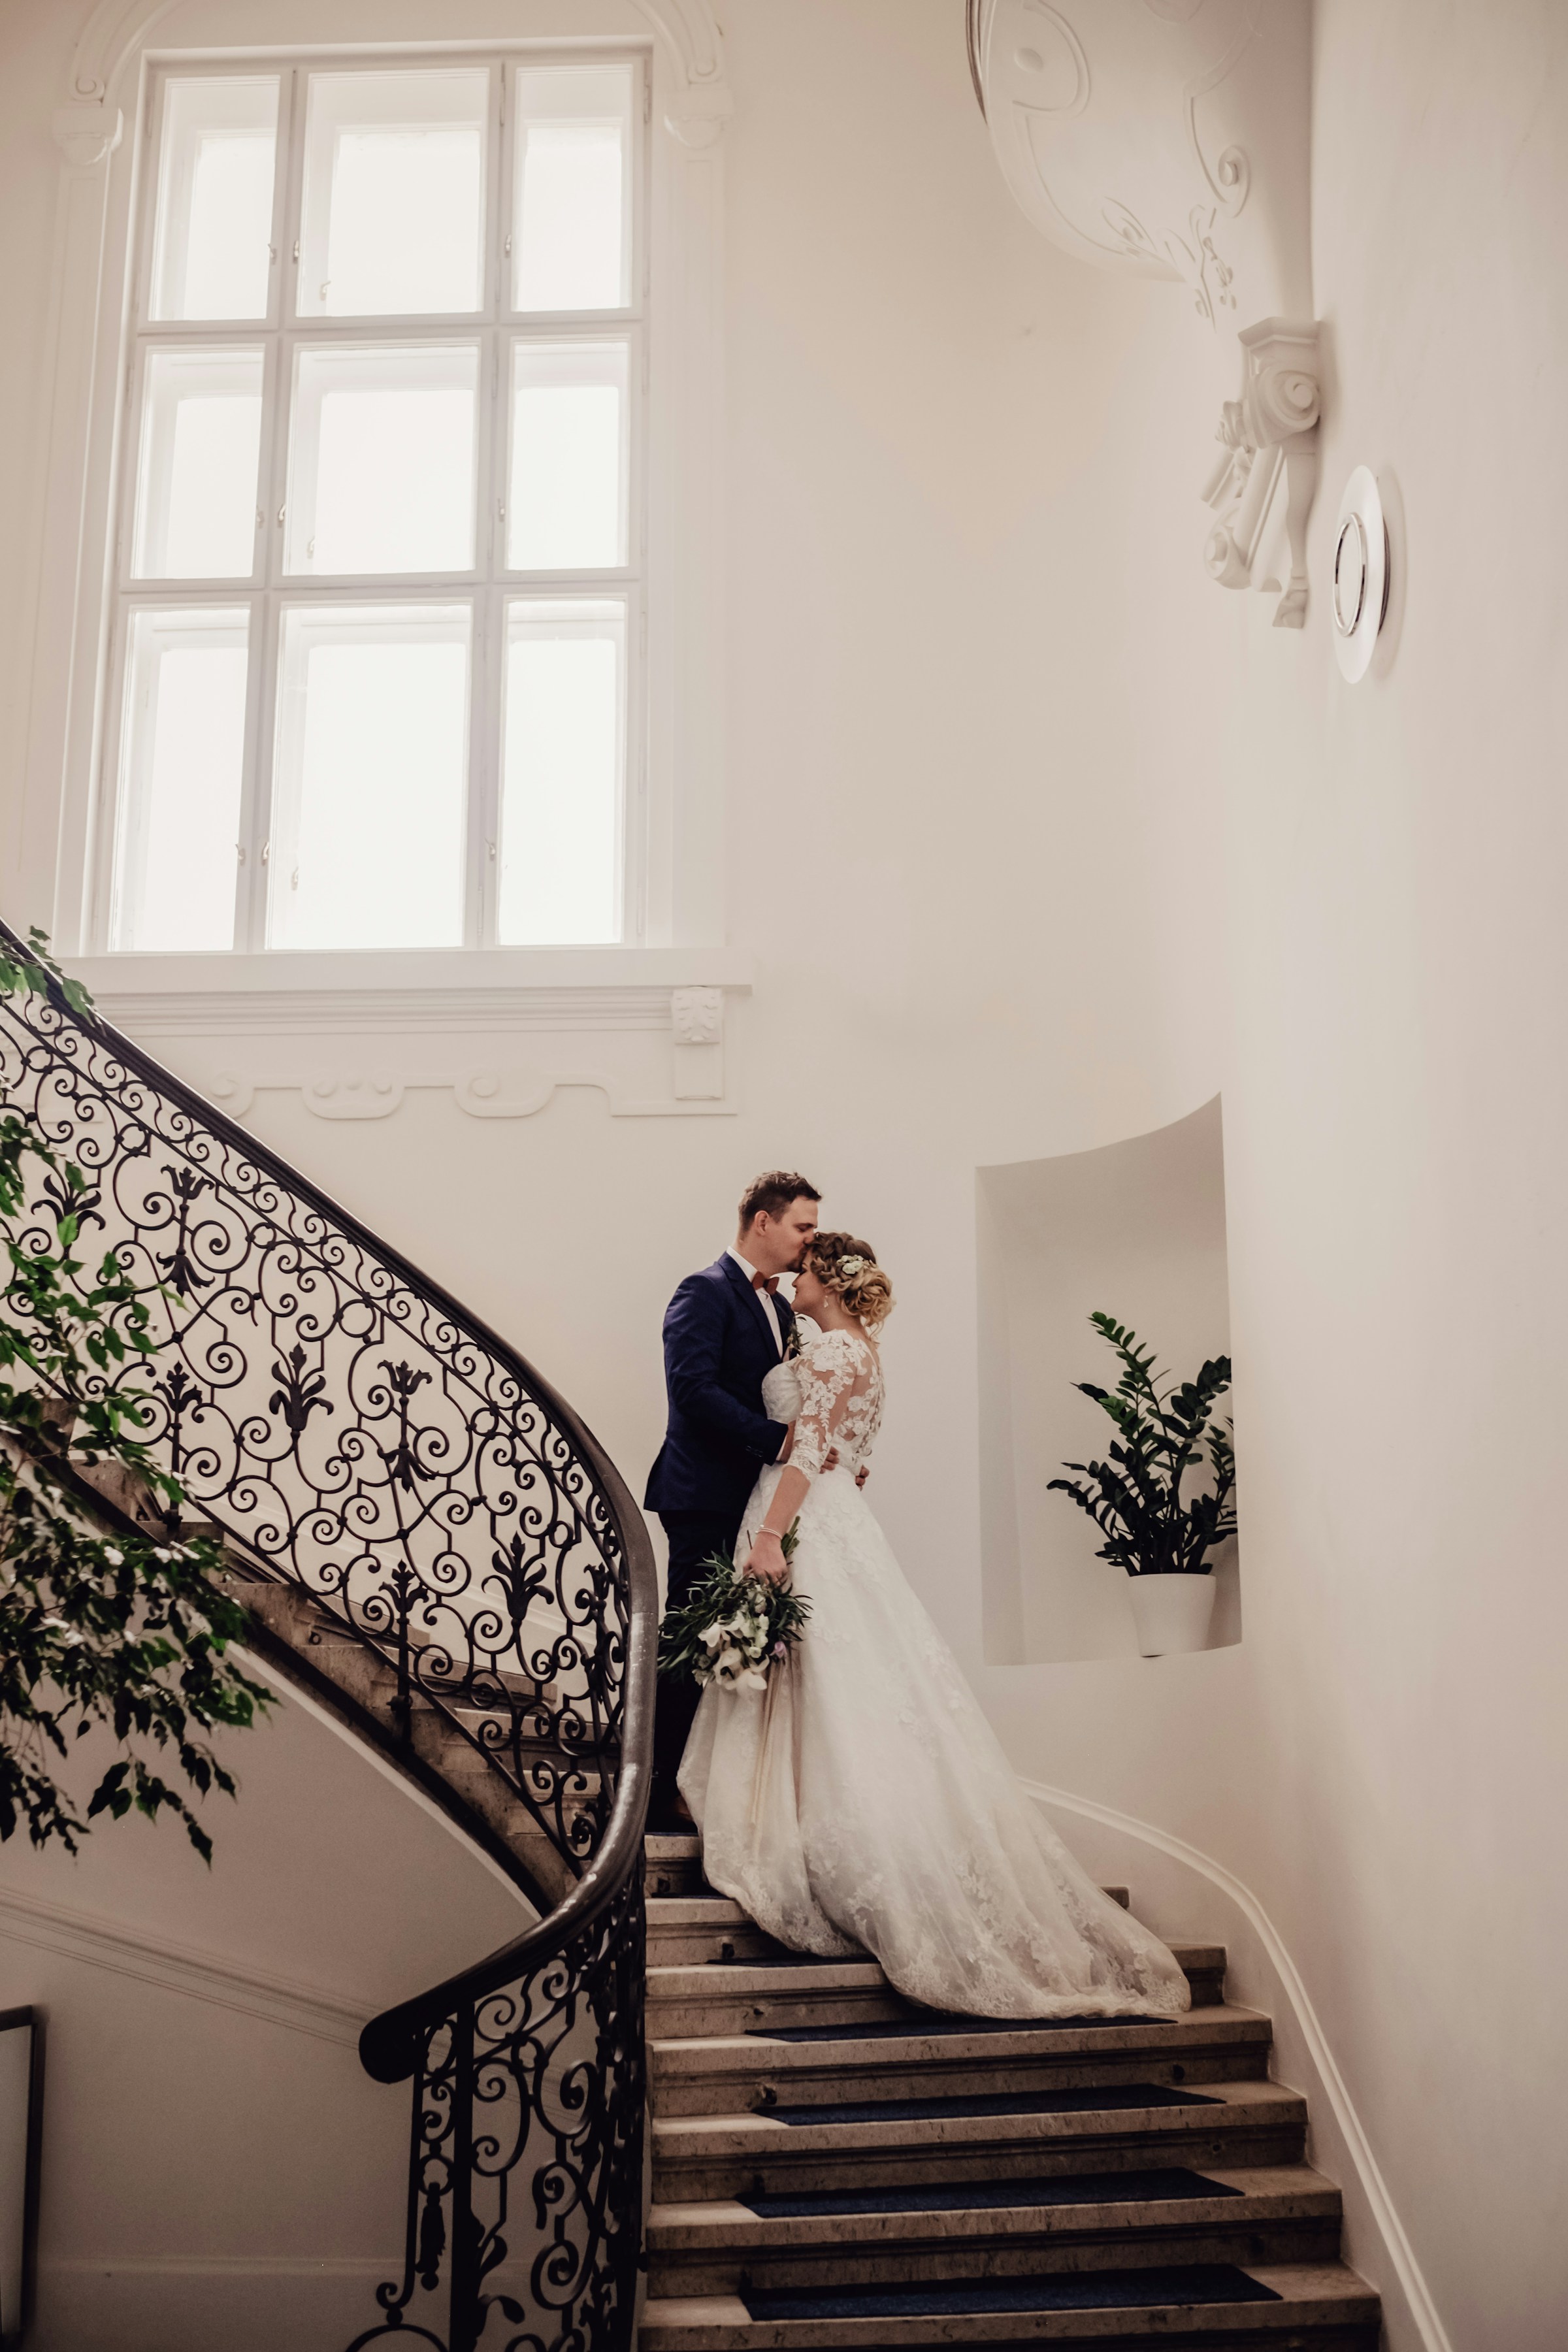 Un couple de mariés sur un escalier | Source : Unsplash